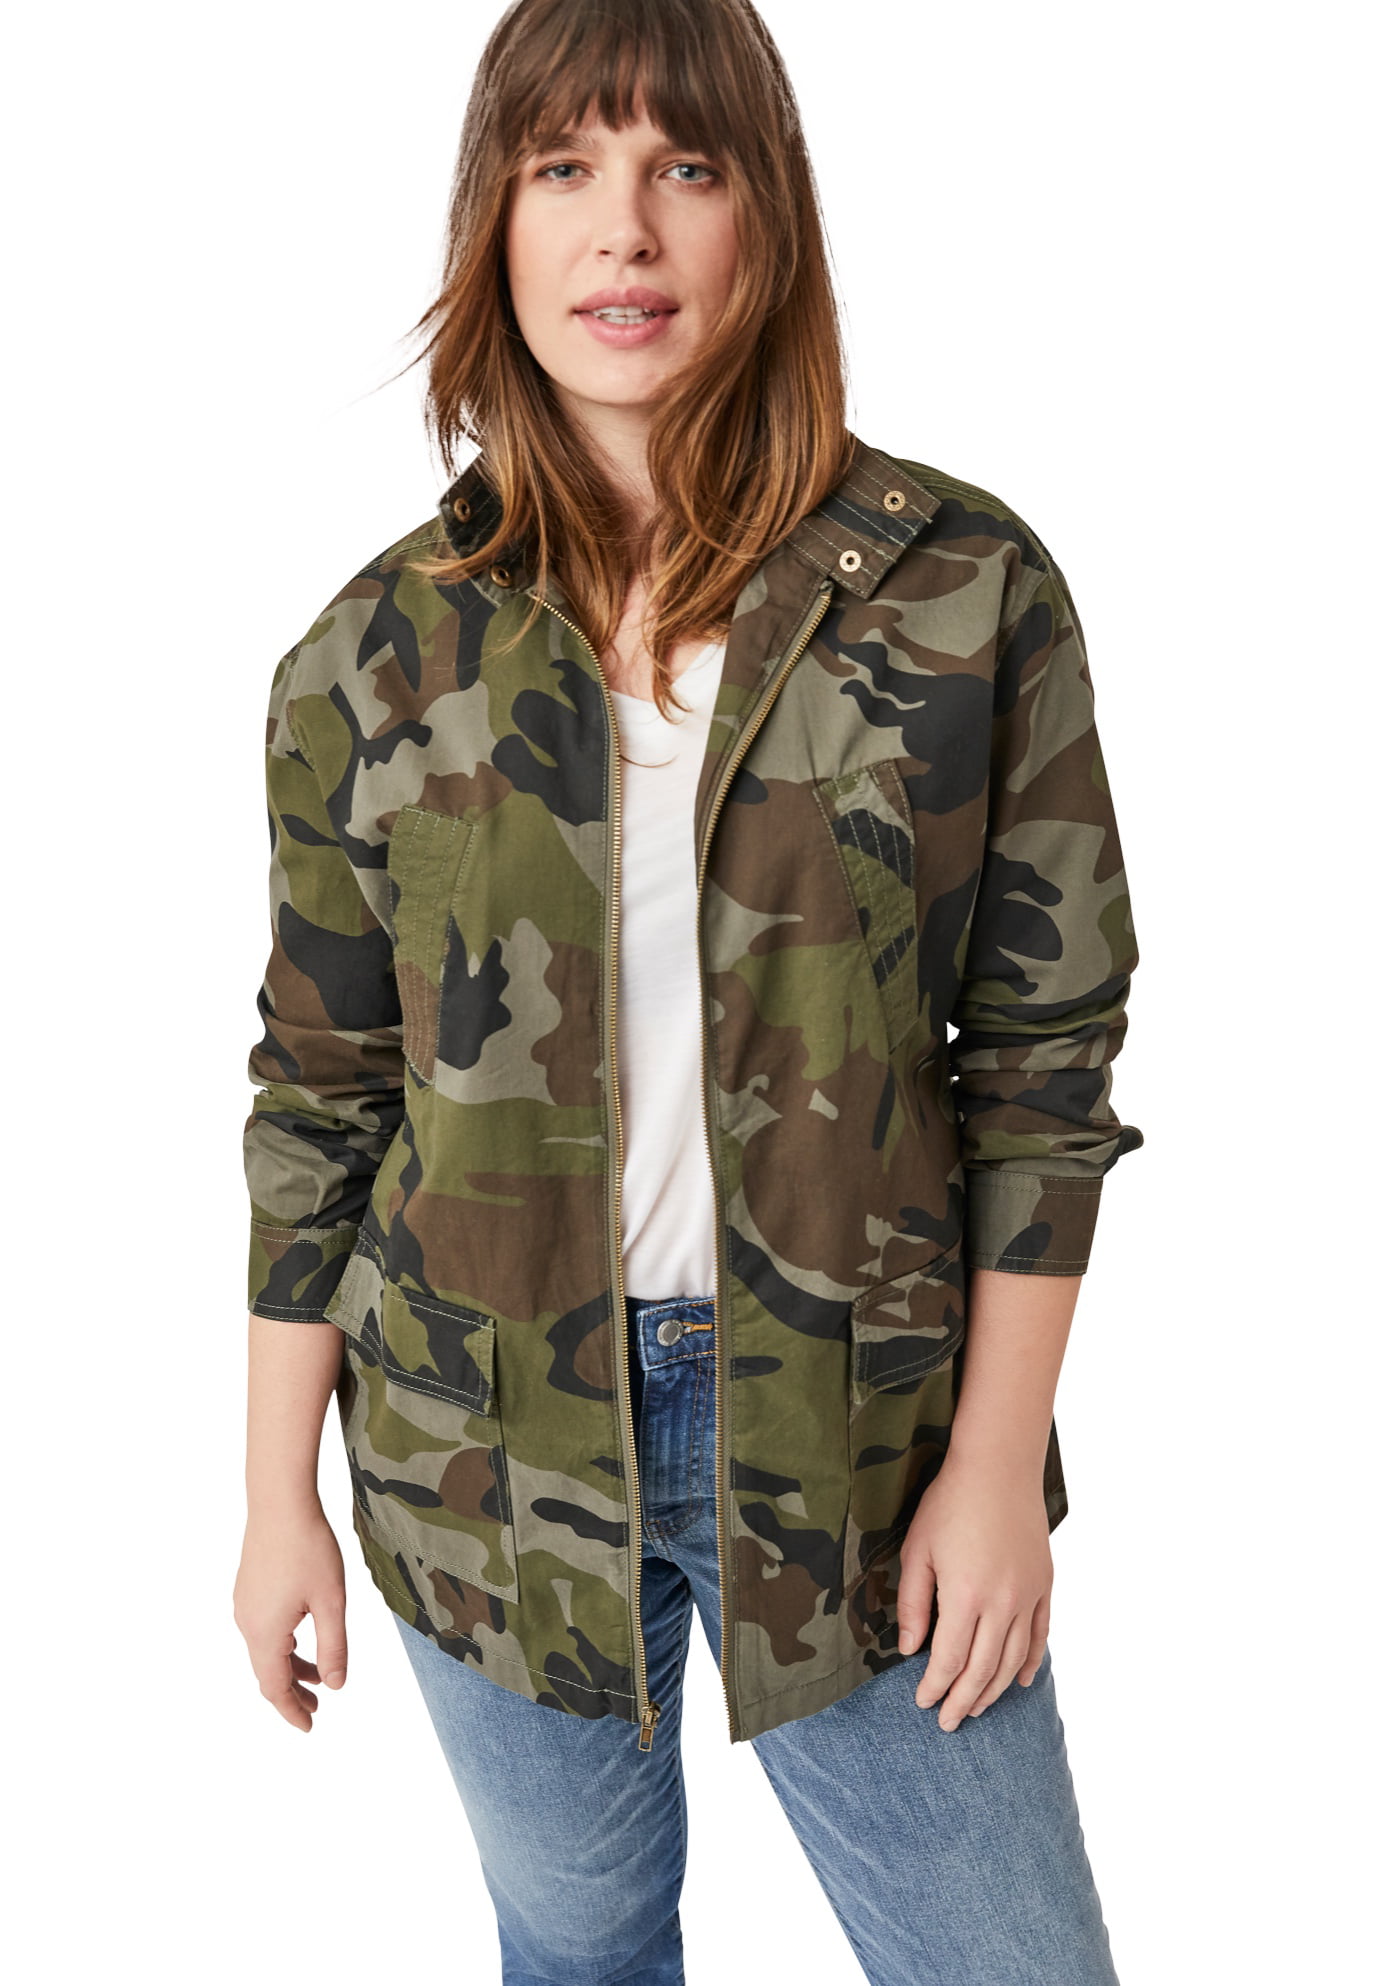 AJF,camouflage jacket ladies|OFF 72%|www.lamartinieregirlscollegelko.com